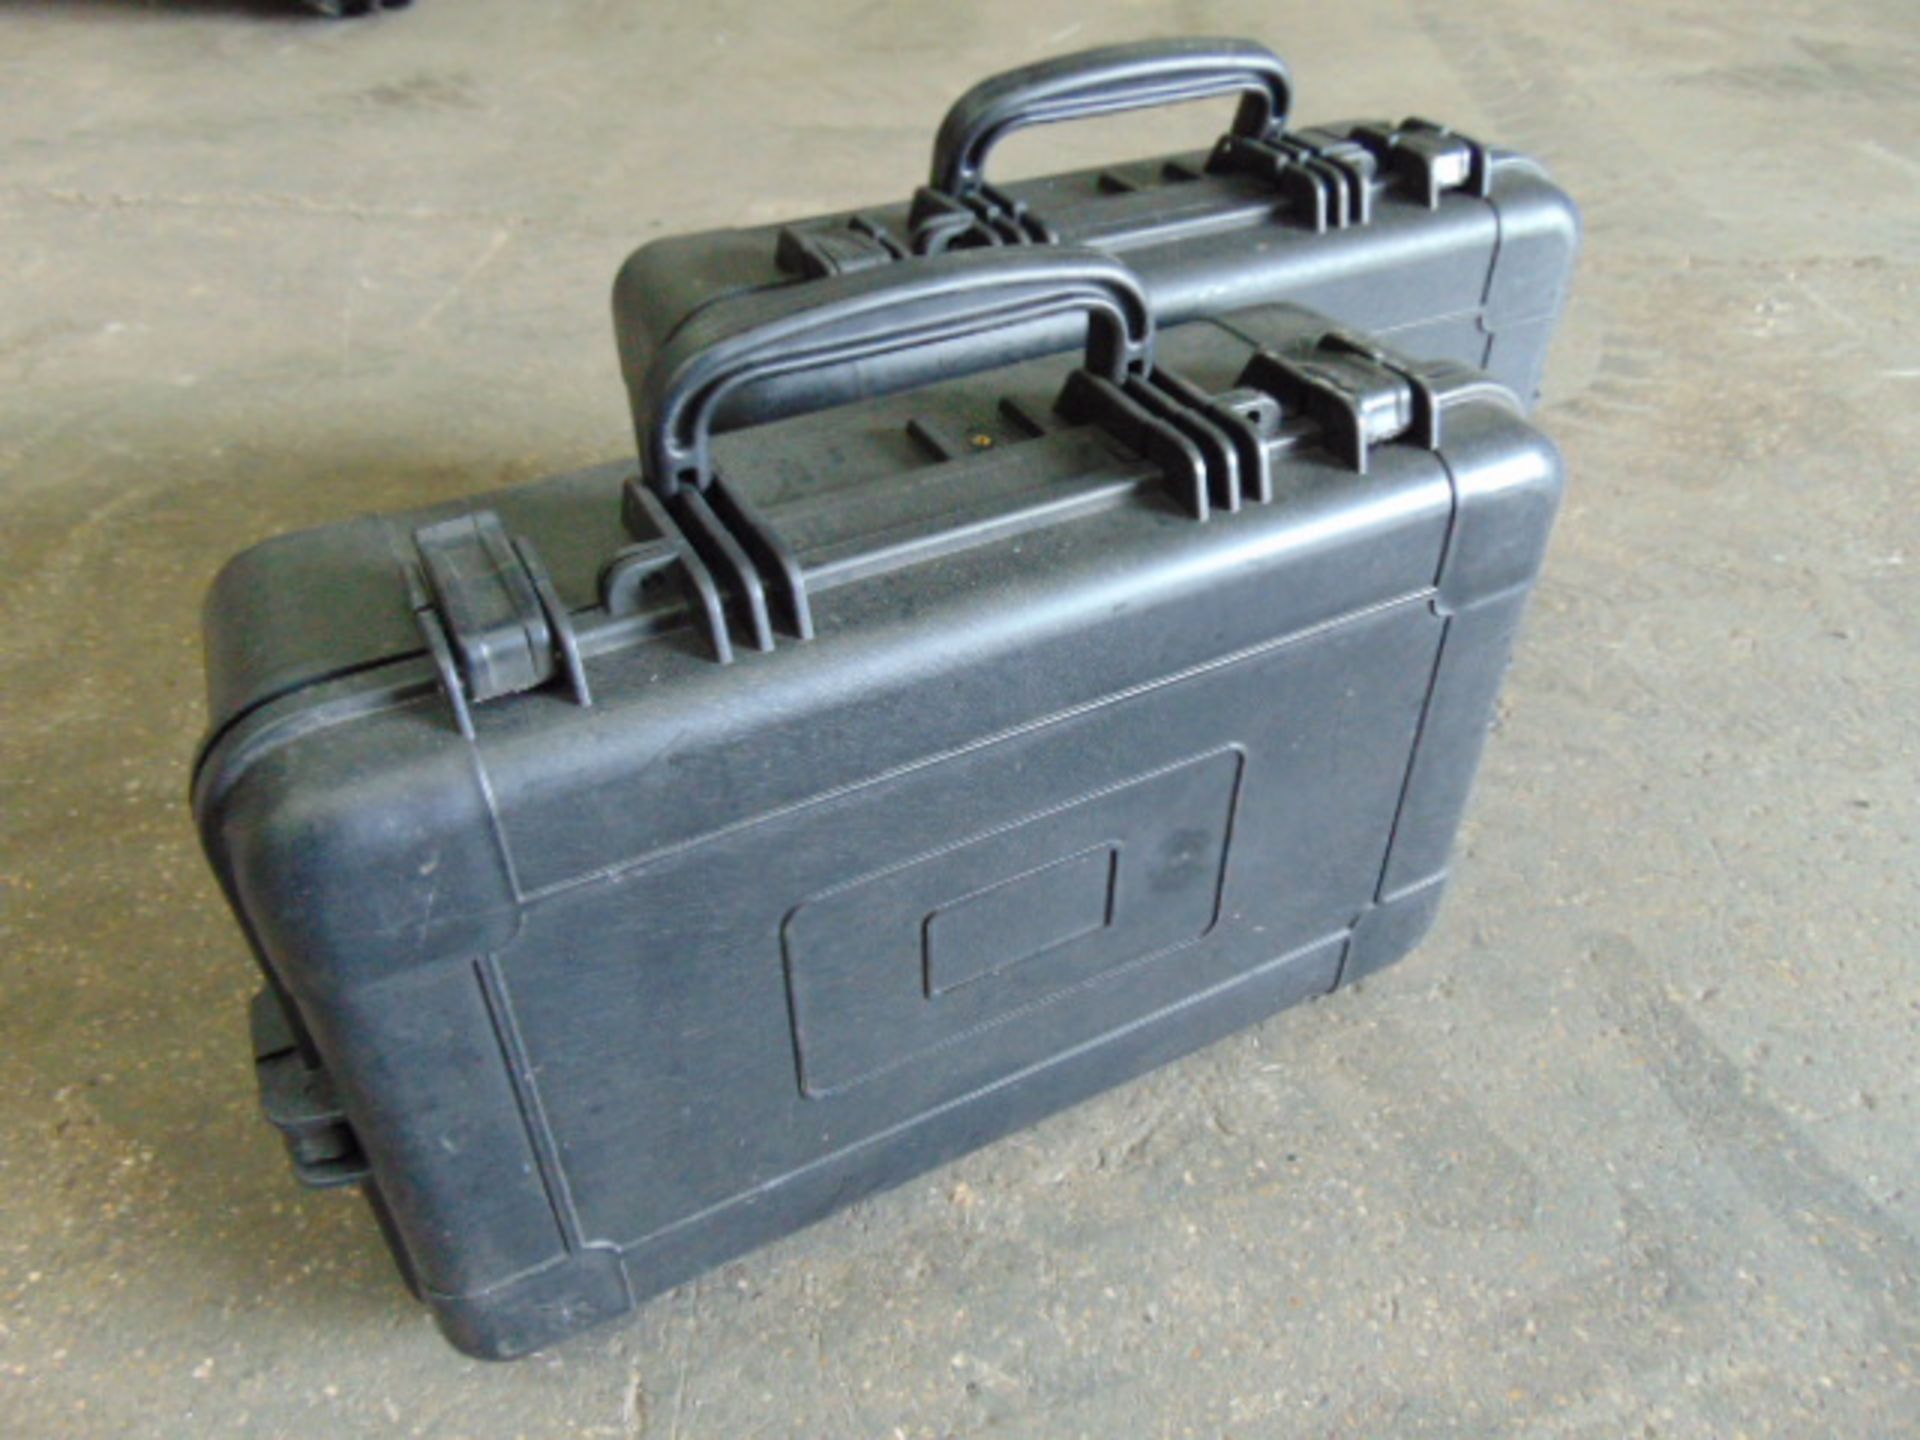 2 x Heavy-duty Waterproof Peli Style Hard Cases with Removeable Foam Inserts